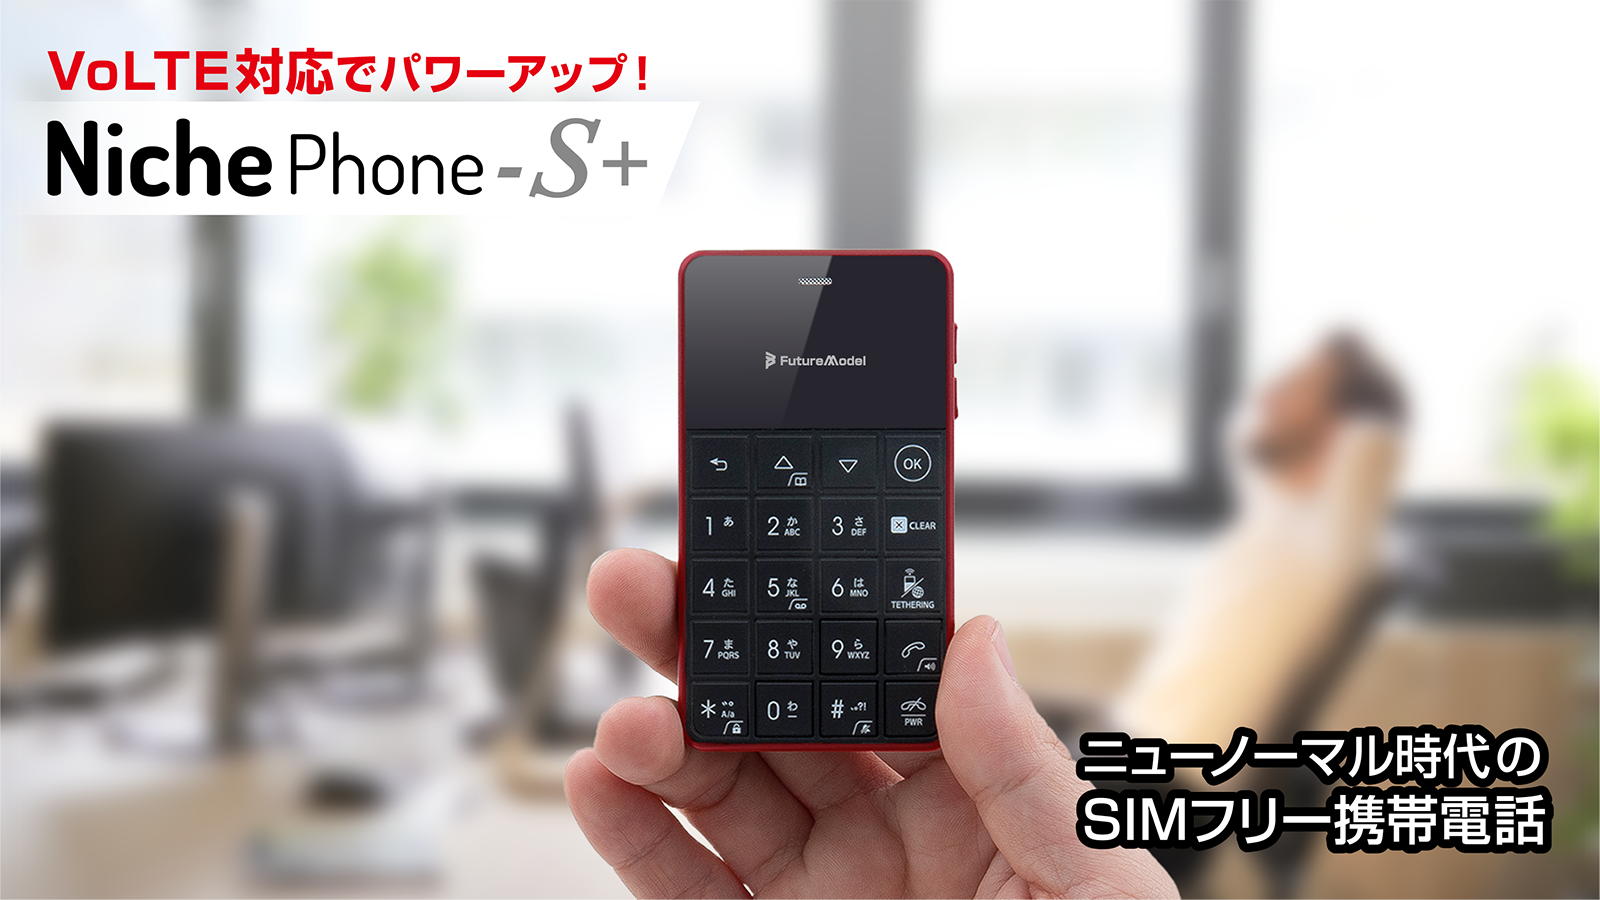 スマートフォン/携帯電話 スマートフォン本体 デザリング機能搭載のSIMフリーケータイ「NichePhone-S」より「VoLTE 